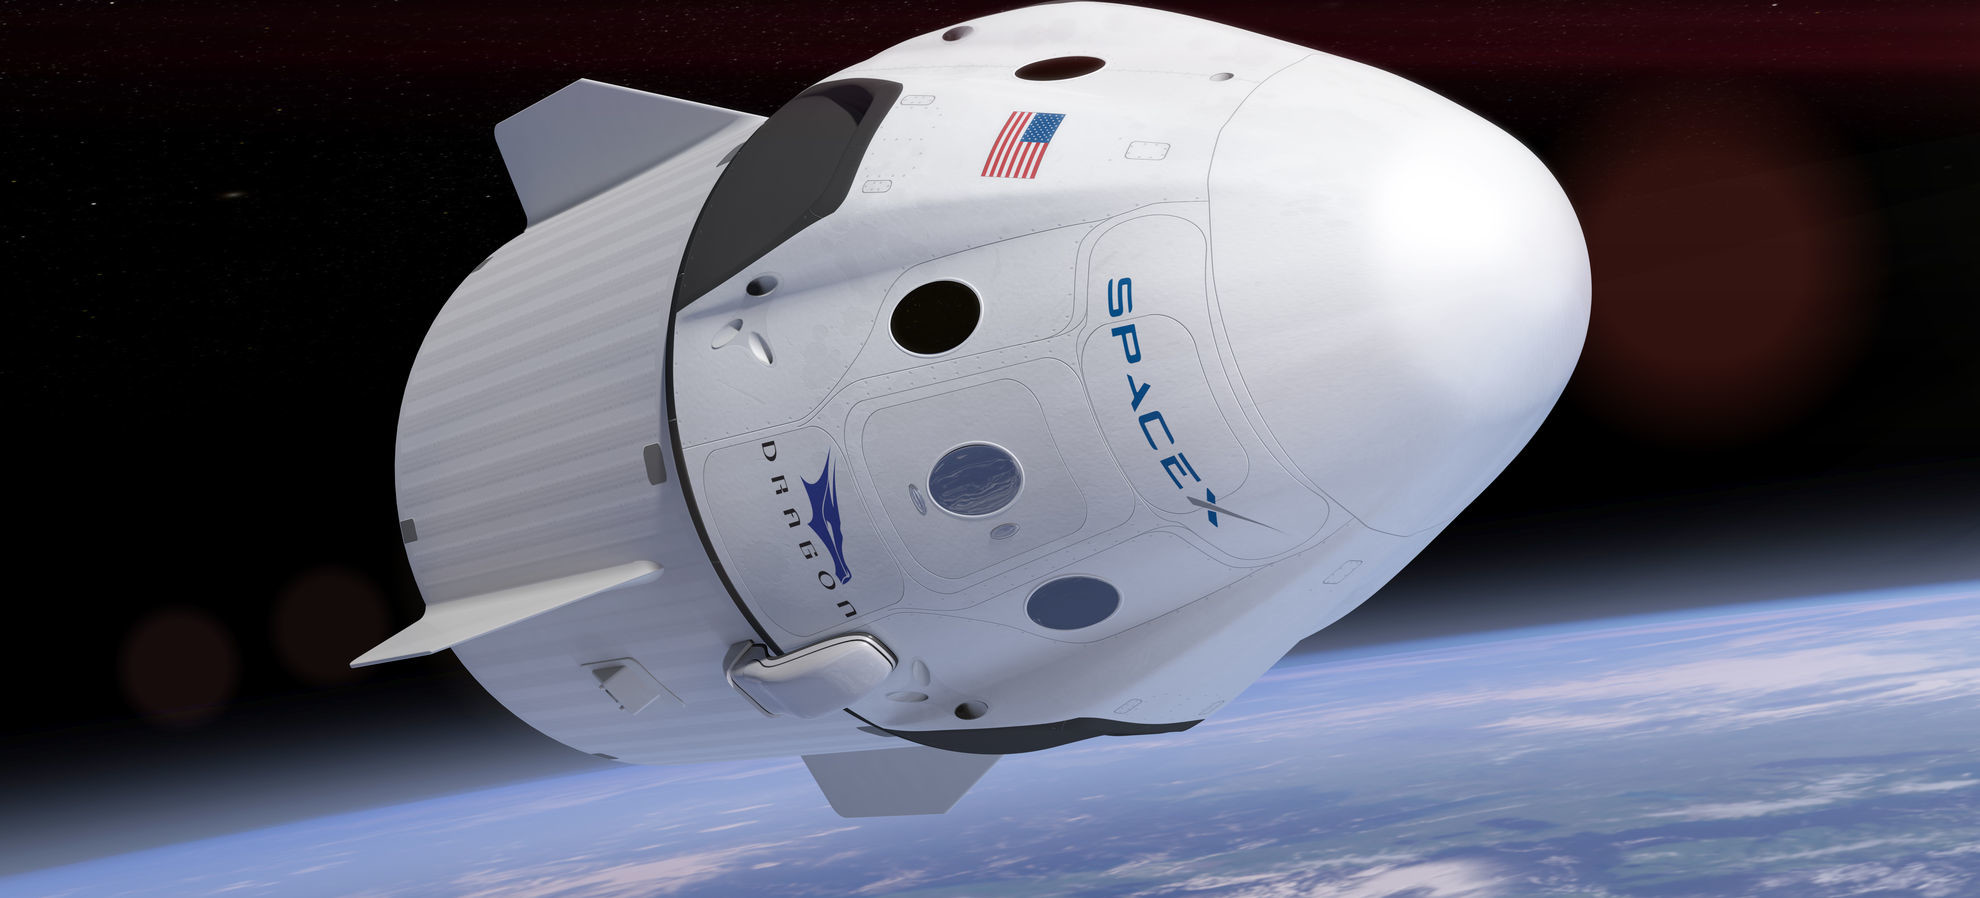 SpaceX Dragon - беспилотный транспортный космический корабль